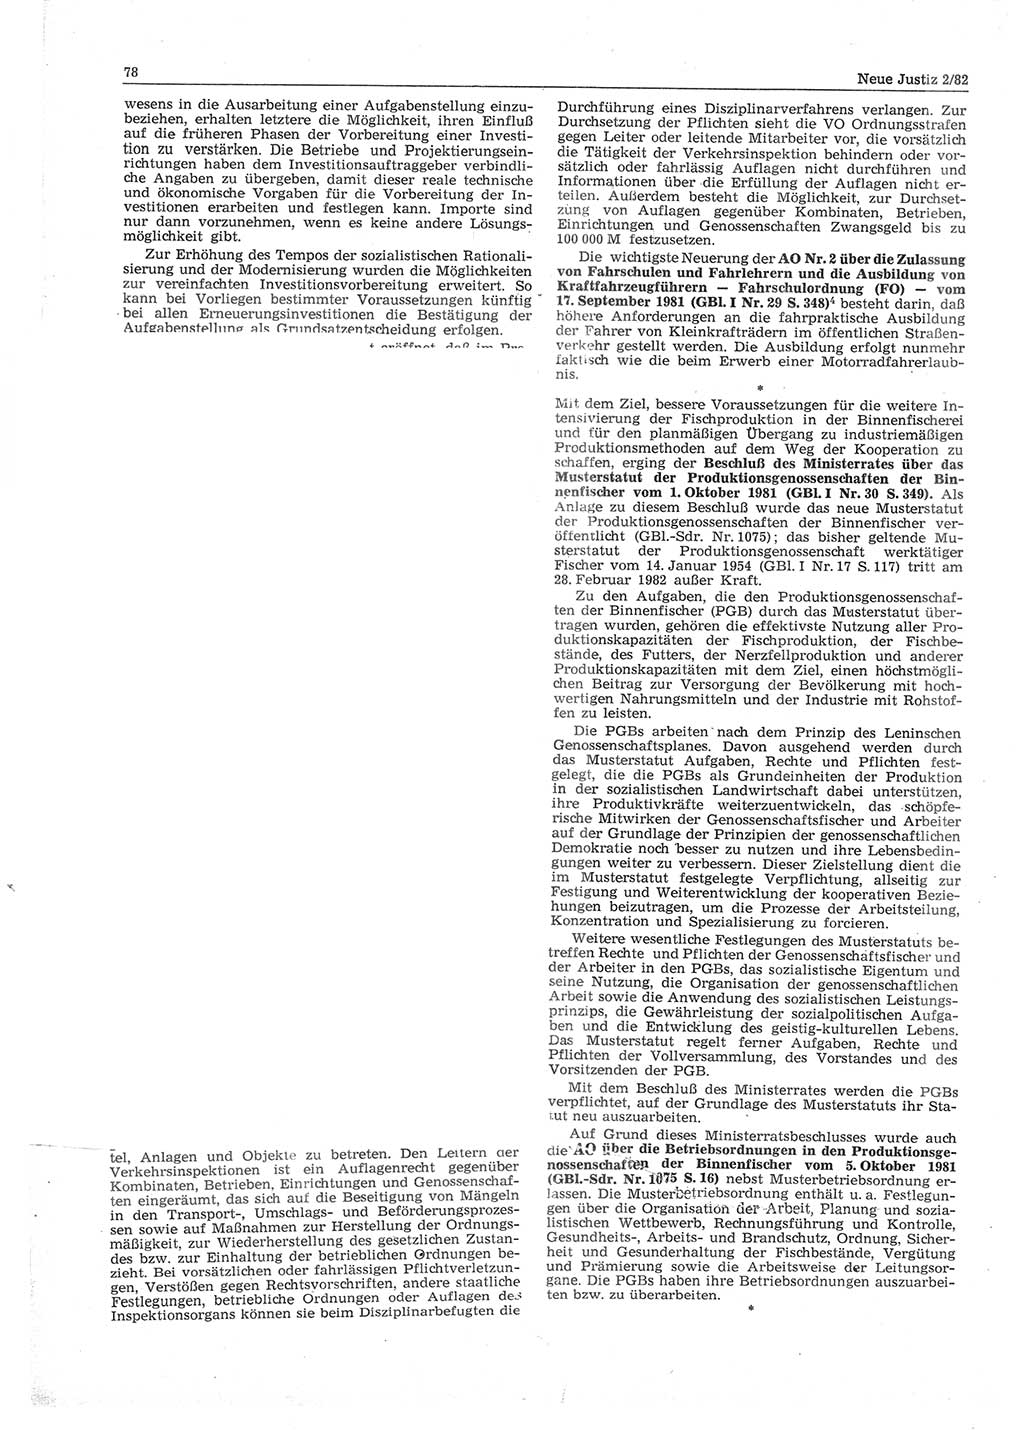 Neue Justiz (NJ), Zeitschrift für sozialistisches Recht und Gesetzlichkeit [Deutsche Demokratische Republik (DDR)], 36. Jahrgang 1982, Seite 78 (NJ DDR 1982, S. 78)